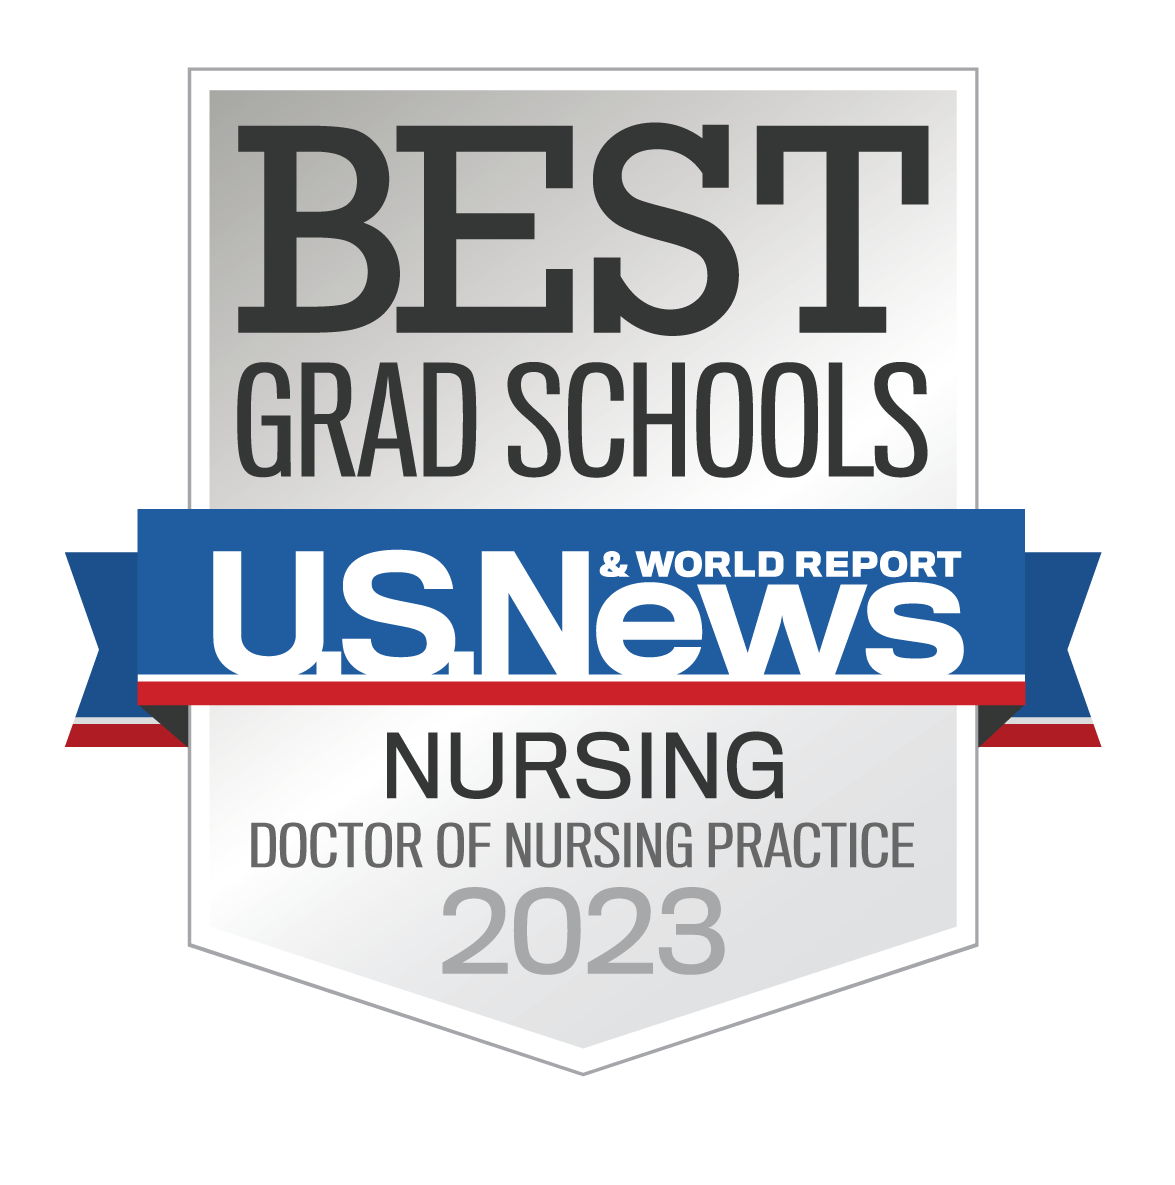 Best Grad Schools U.S. News - Wayne State Nursing - Doctor of Nursing Practice 2023